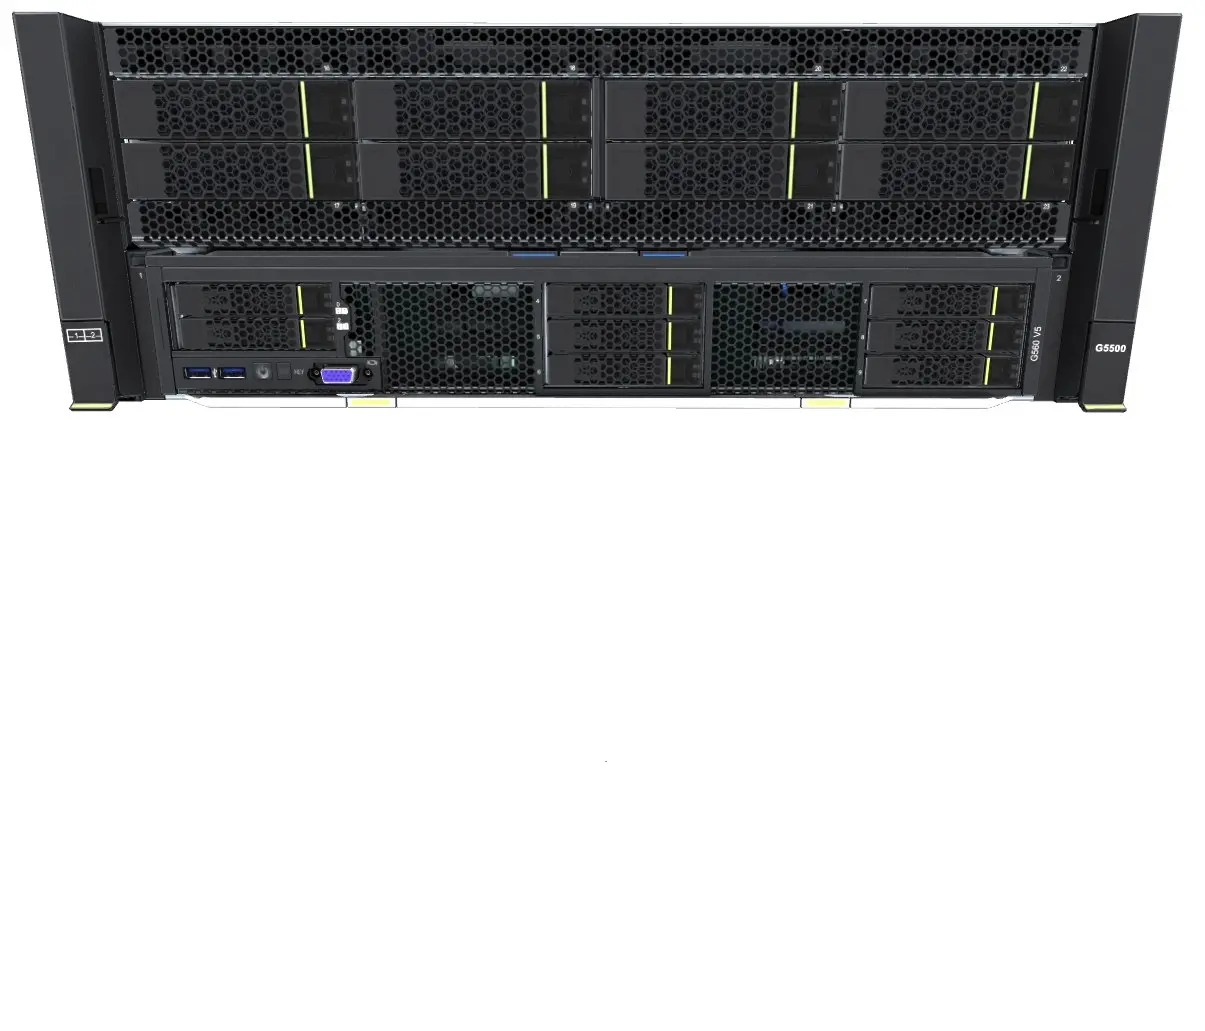 Xfusion 4U 2 soquetes G5500 GPU Servidor AI HPC base de dados inteligente em nuvem Bom preço Venda quente em estoque